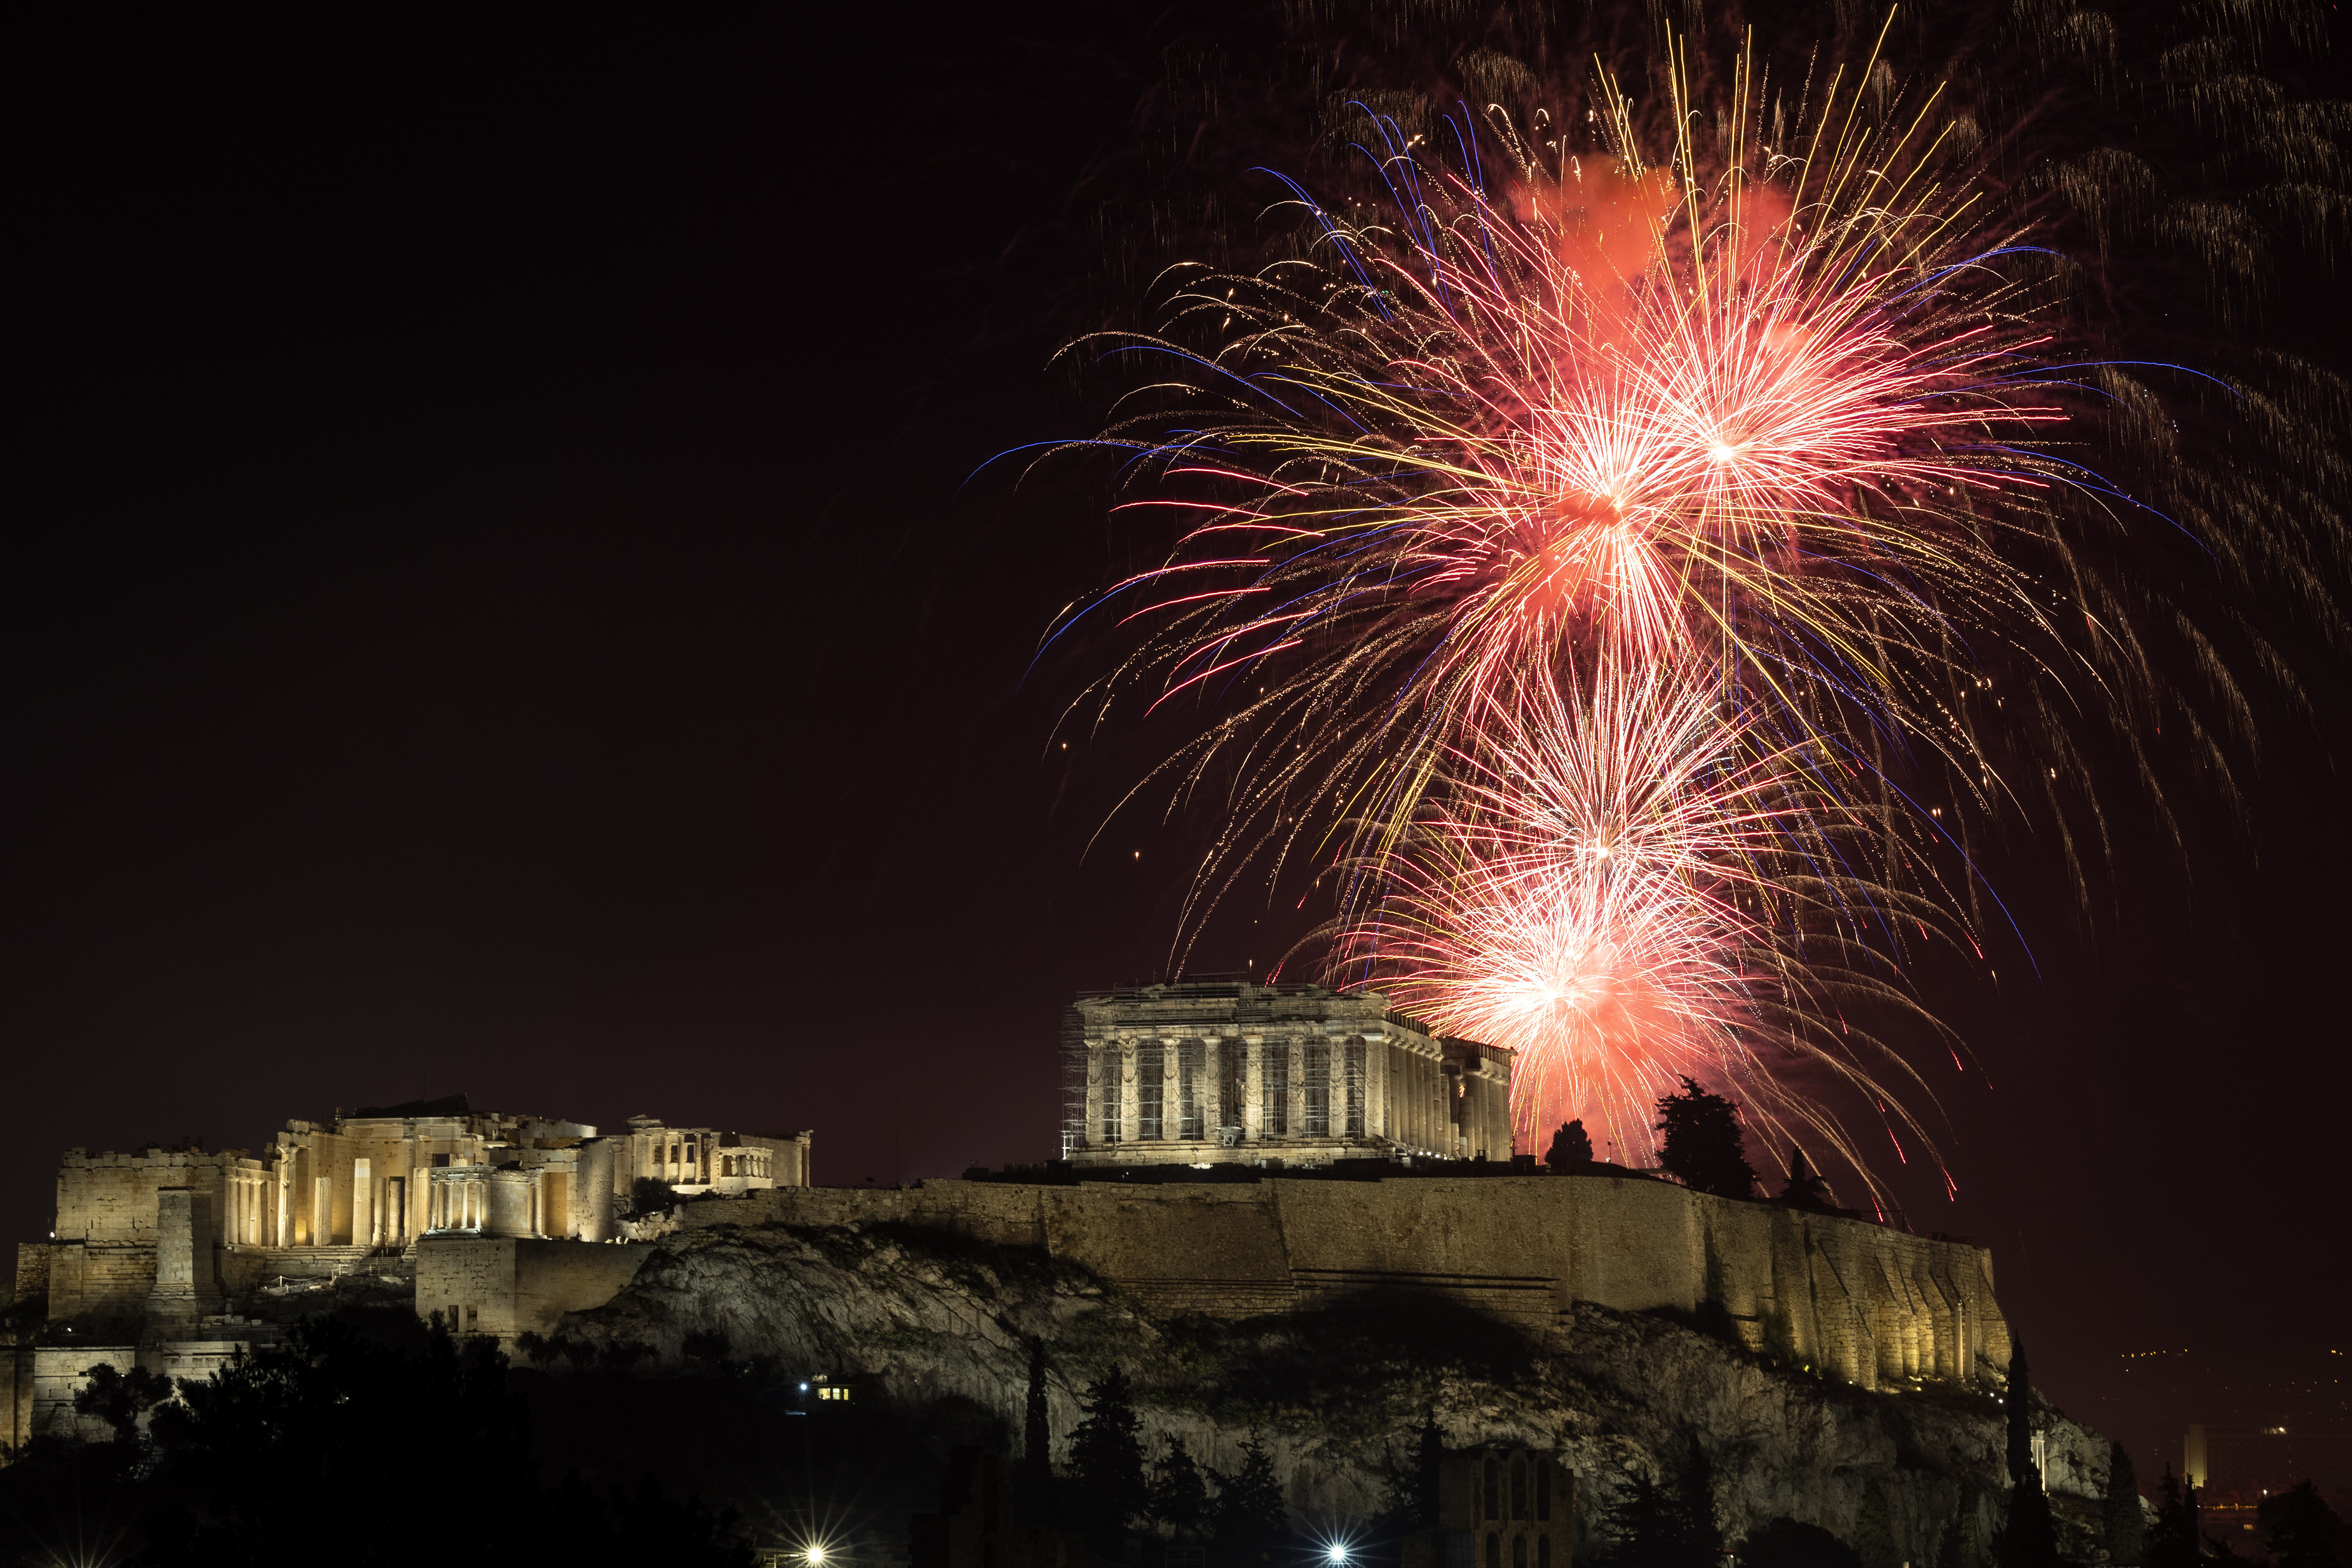 Fuegos artificiales explotan sobre el Partenón, en la Acrópolis, durante la celebración del año nuevo, en Atenas, Grecia, el 1 de enero de 2023. (AP Foto/Yorgos Karahalis)